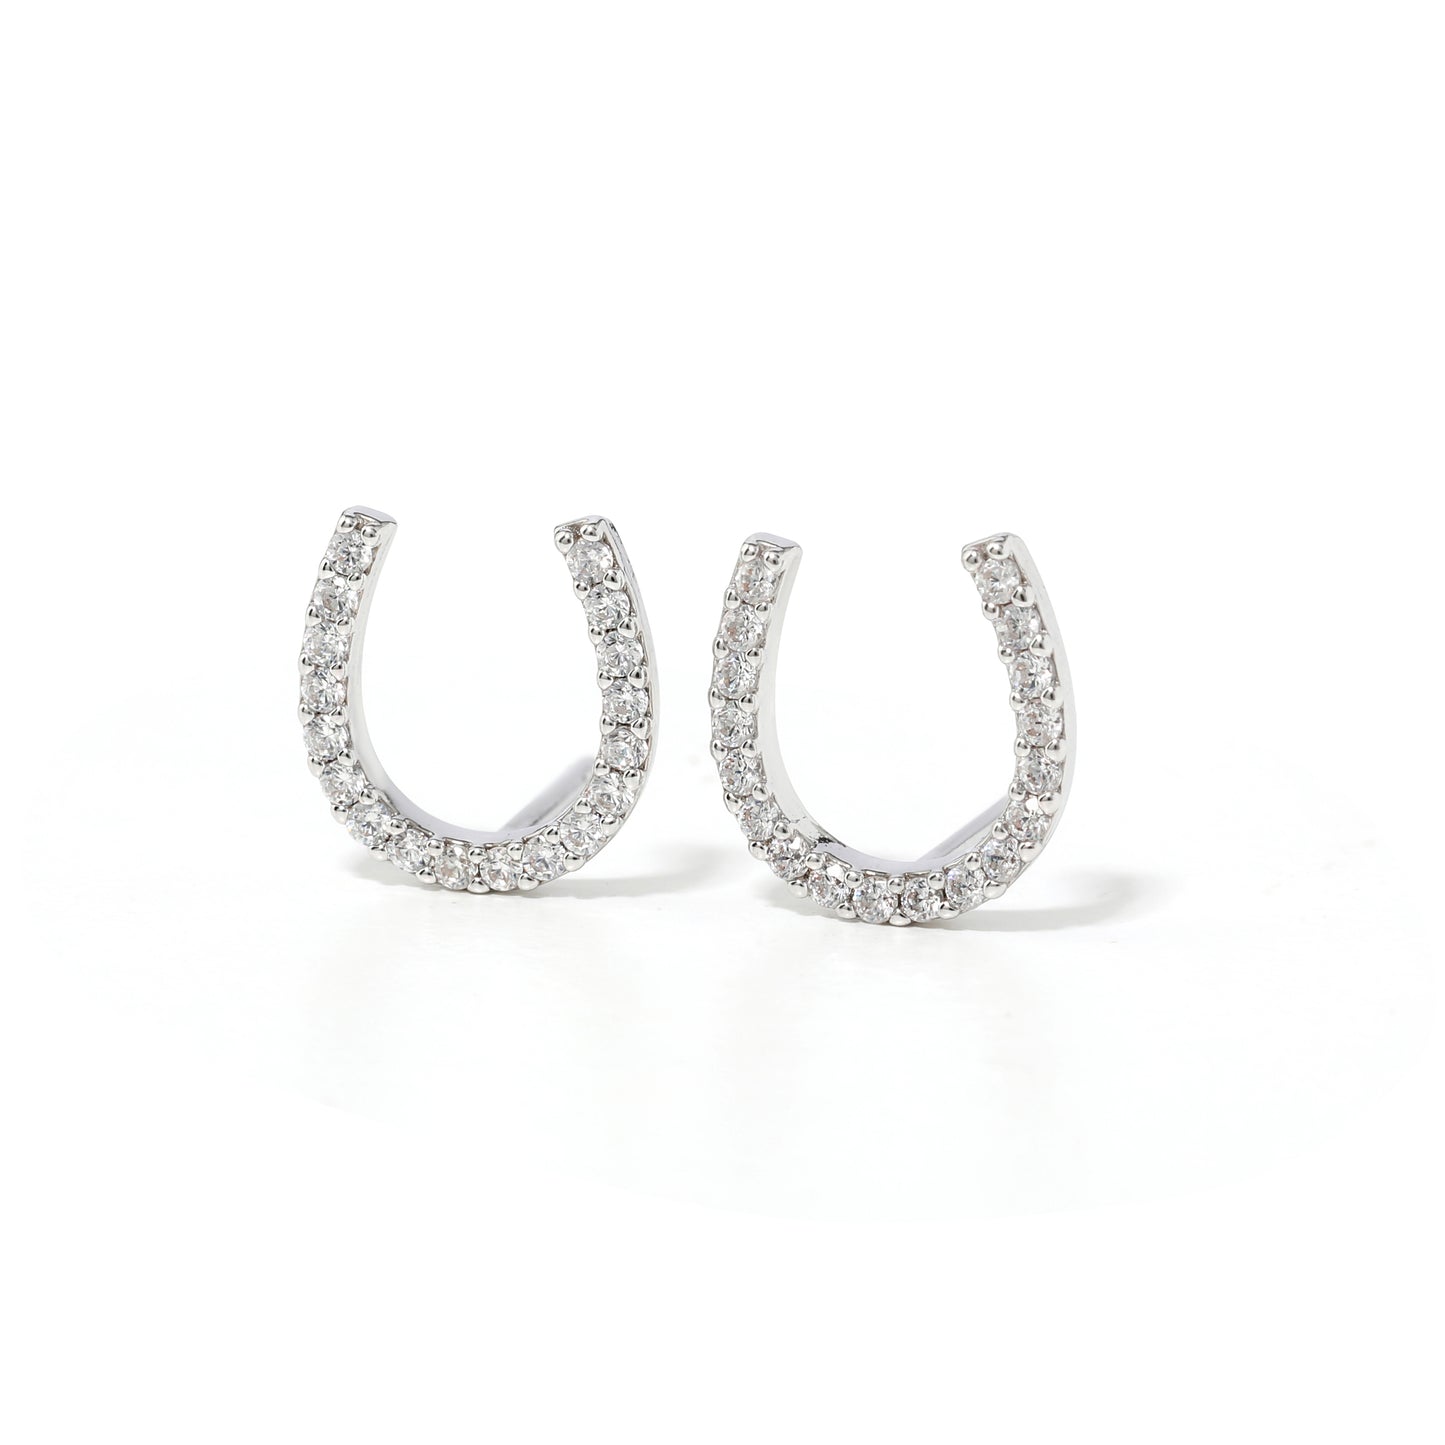 Lucky Horseshoe Earrings in Silver